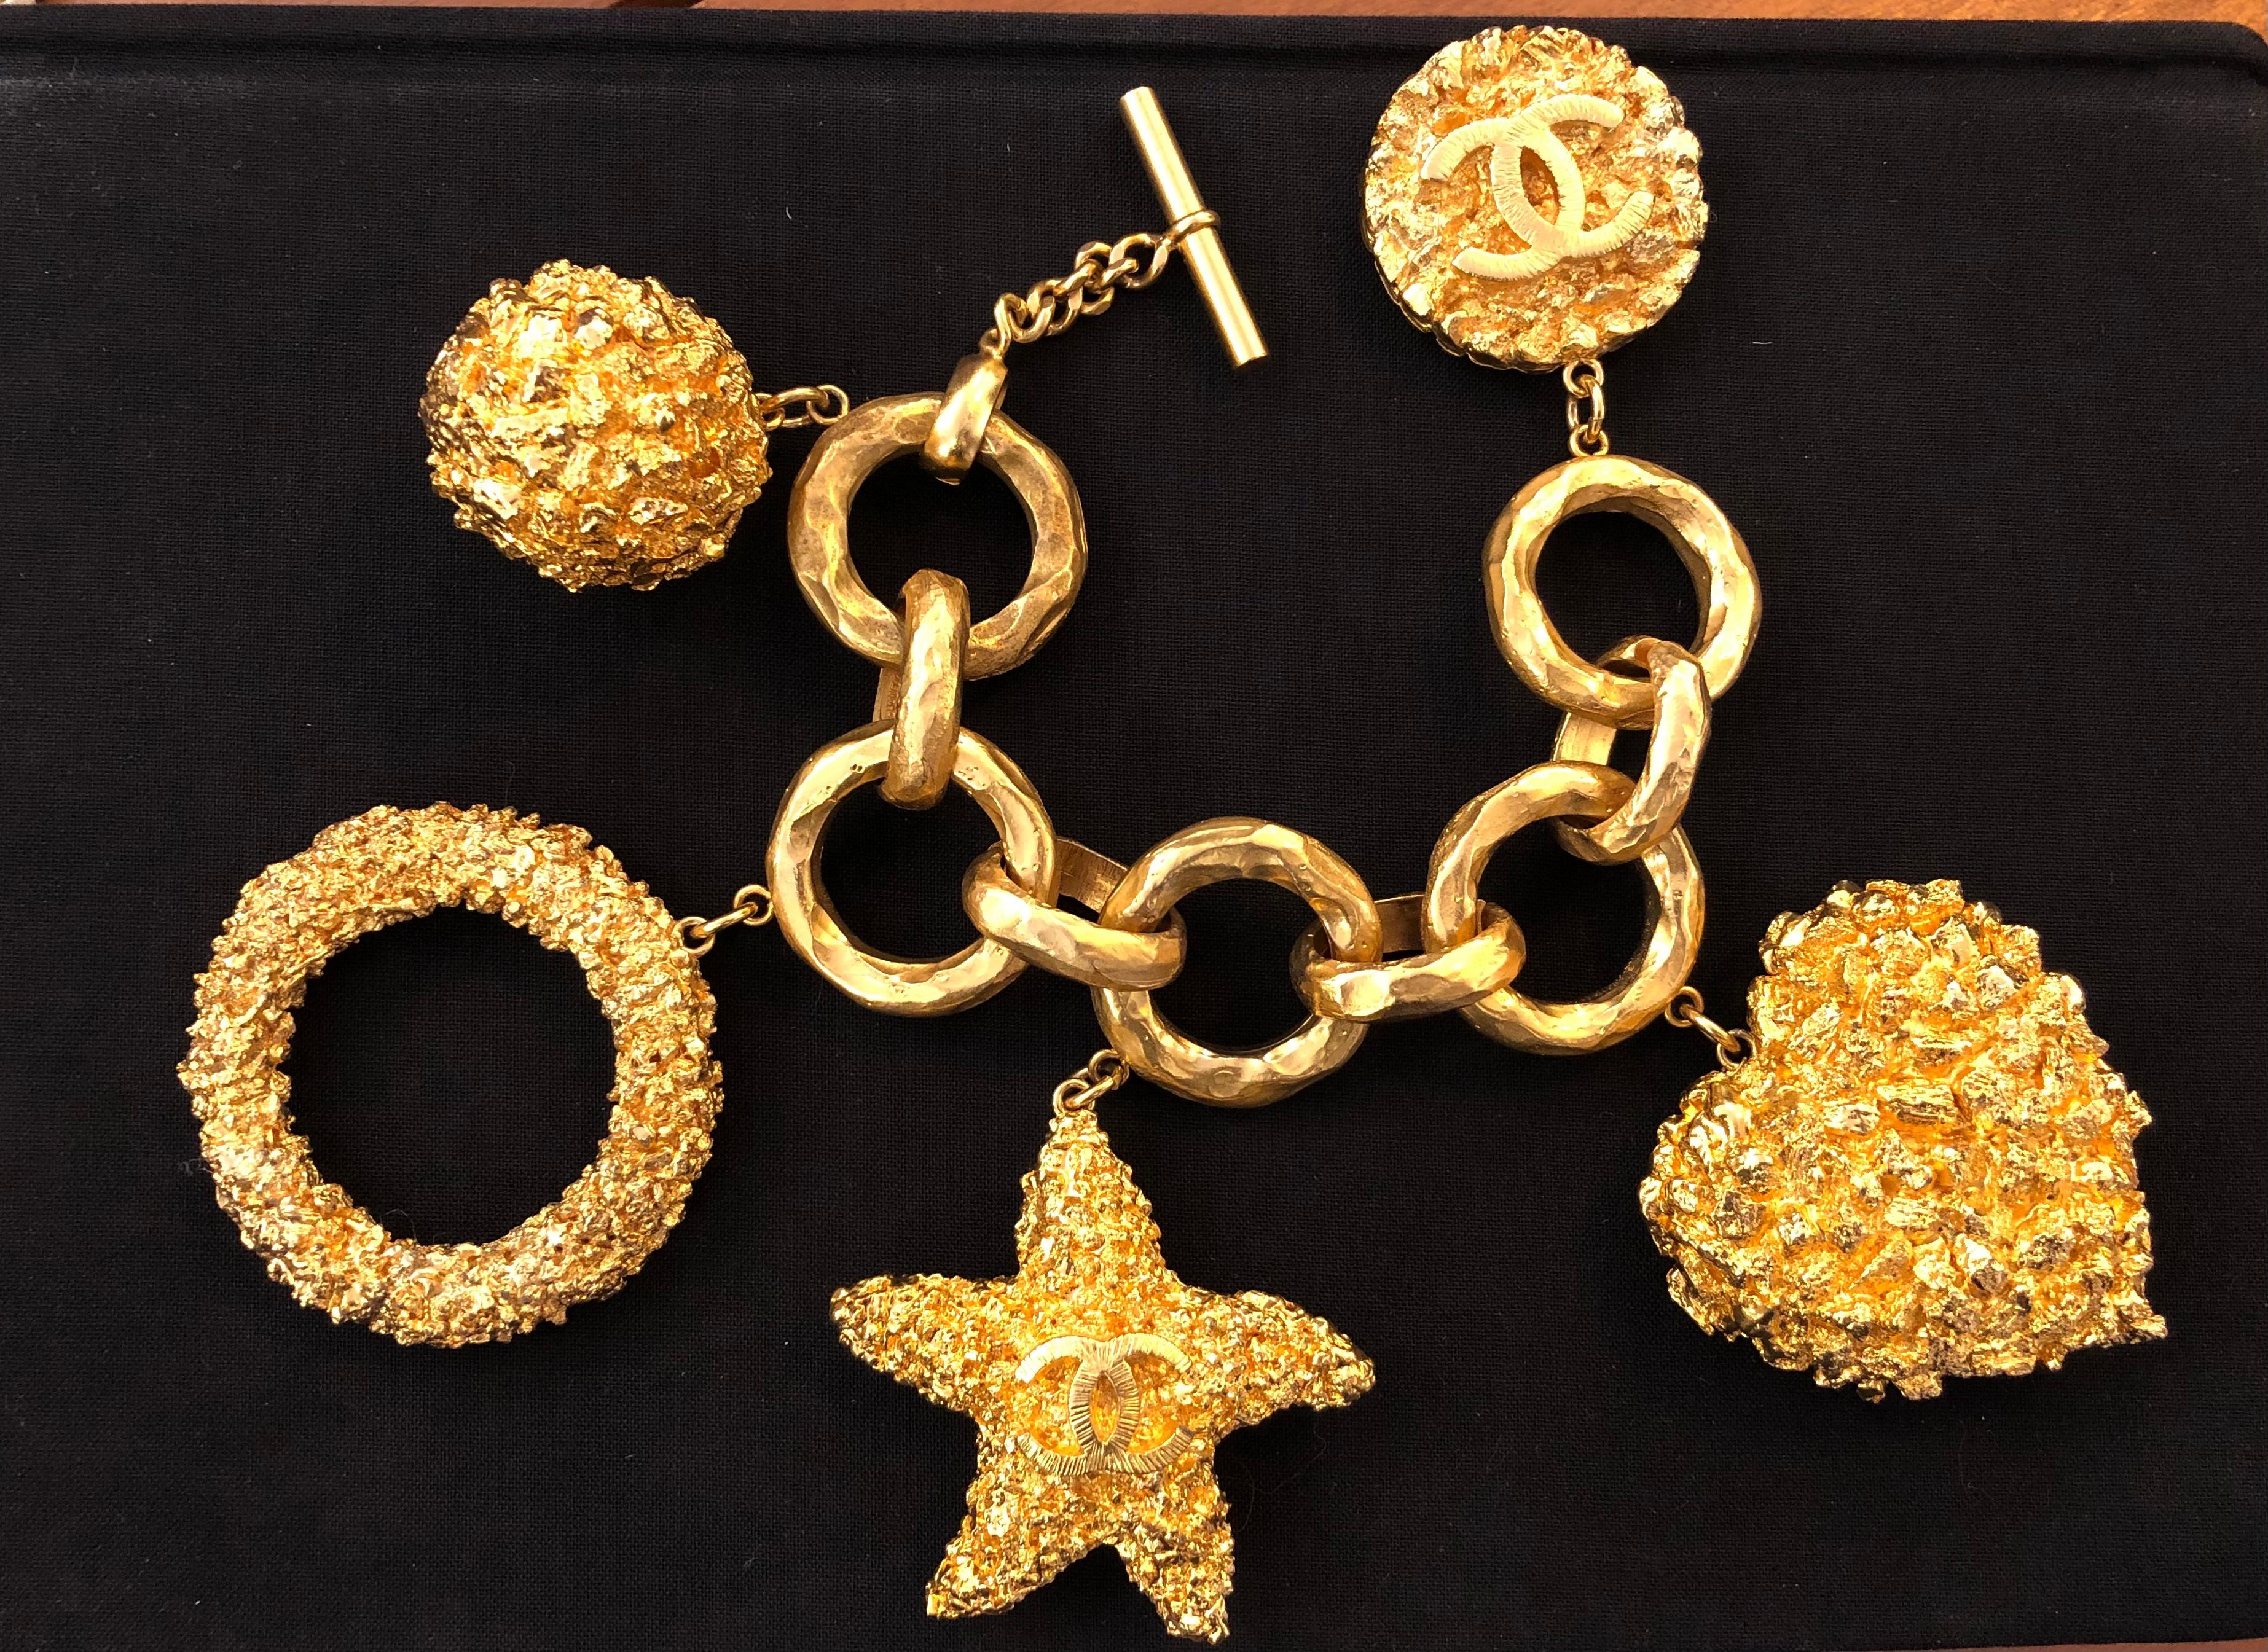 Dieses große, goldfarbene Armband aus der Chanel Cruise Collection 1993 zeigt fünf goldfarbene, strukturierte Motive, darunter einen CC-Seestern. Sie wurde 1993 in der Werbekampagne für die Cruise Collection vorgestellt. Ein absolut seltenes Stück,